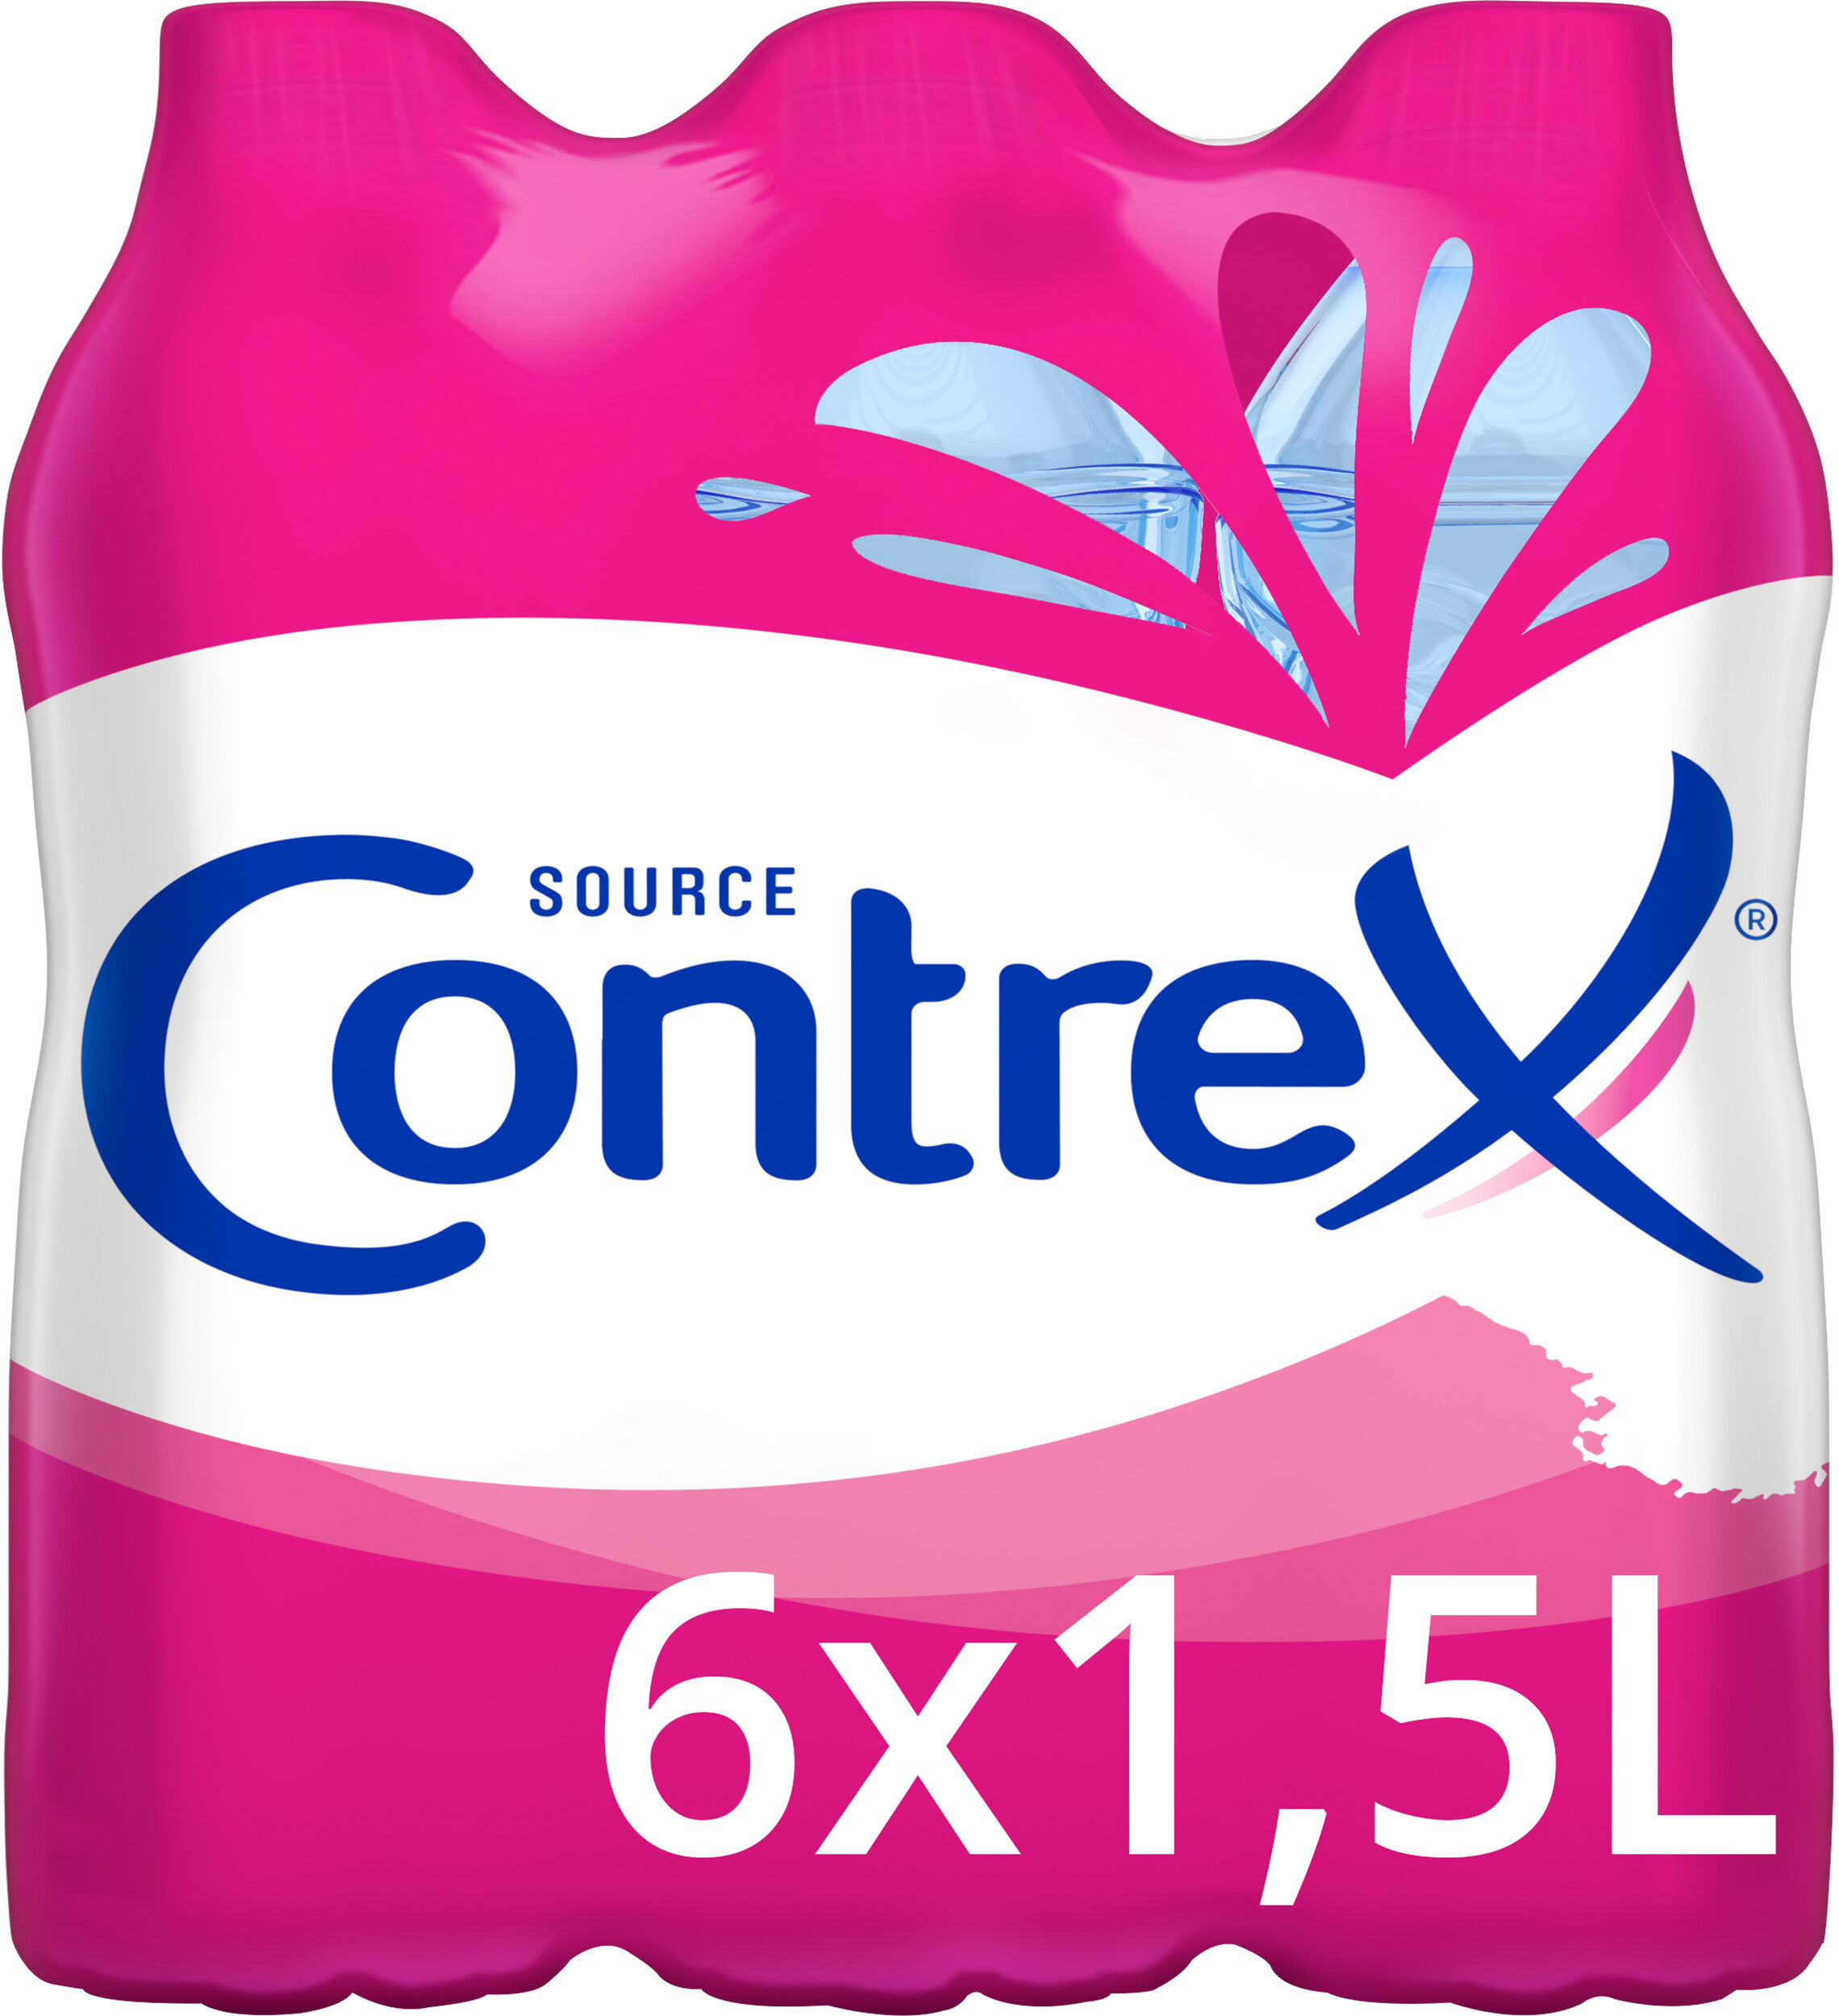 CONTREX eau minérale naturelle 6x1,5L - Product - fr